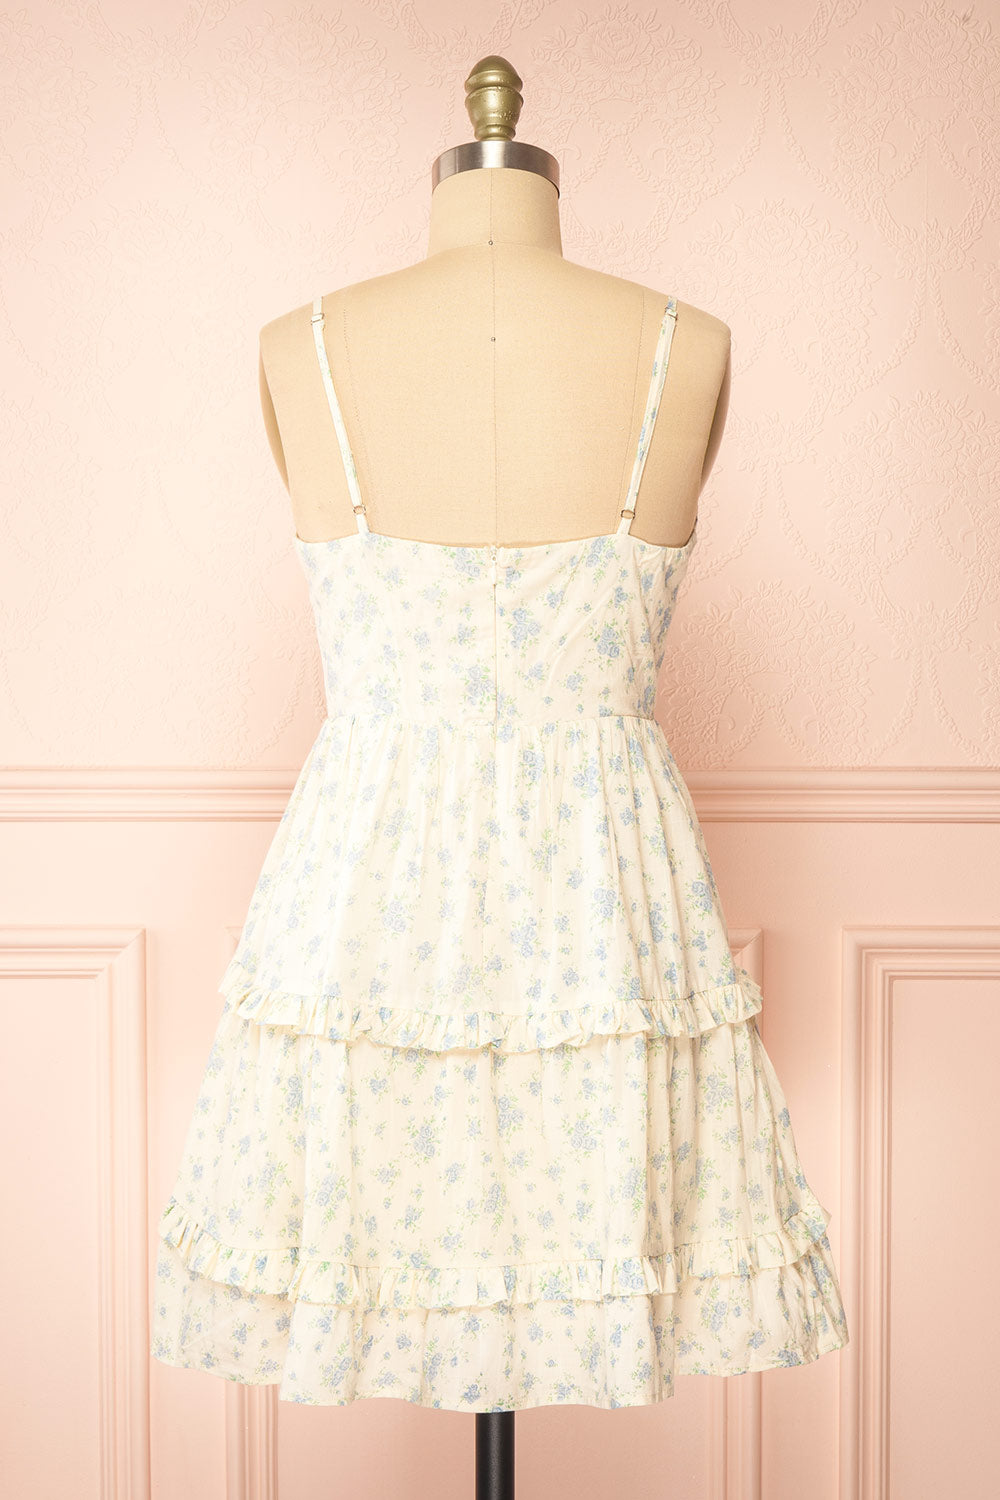 Faelle Short Cream Dress w/ Floral Pattern | Boutique 1861  back view